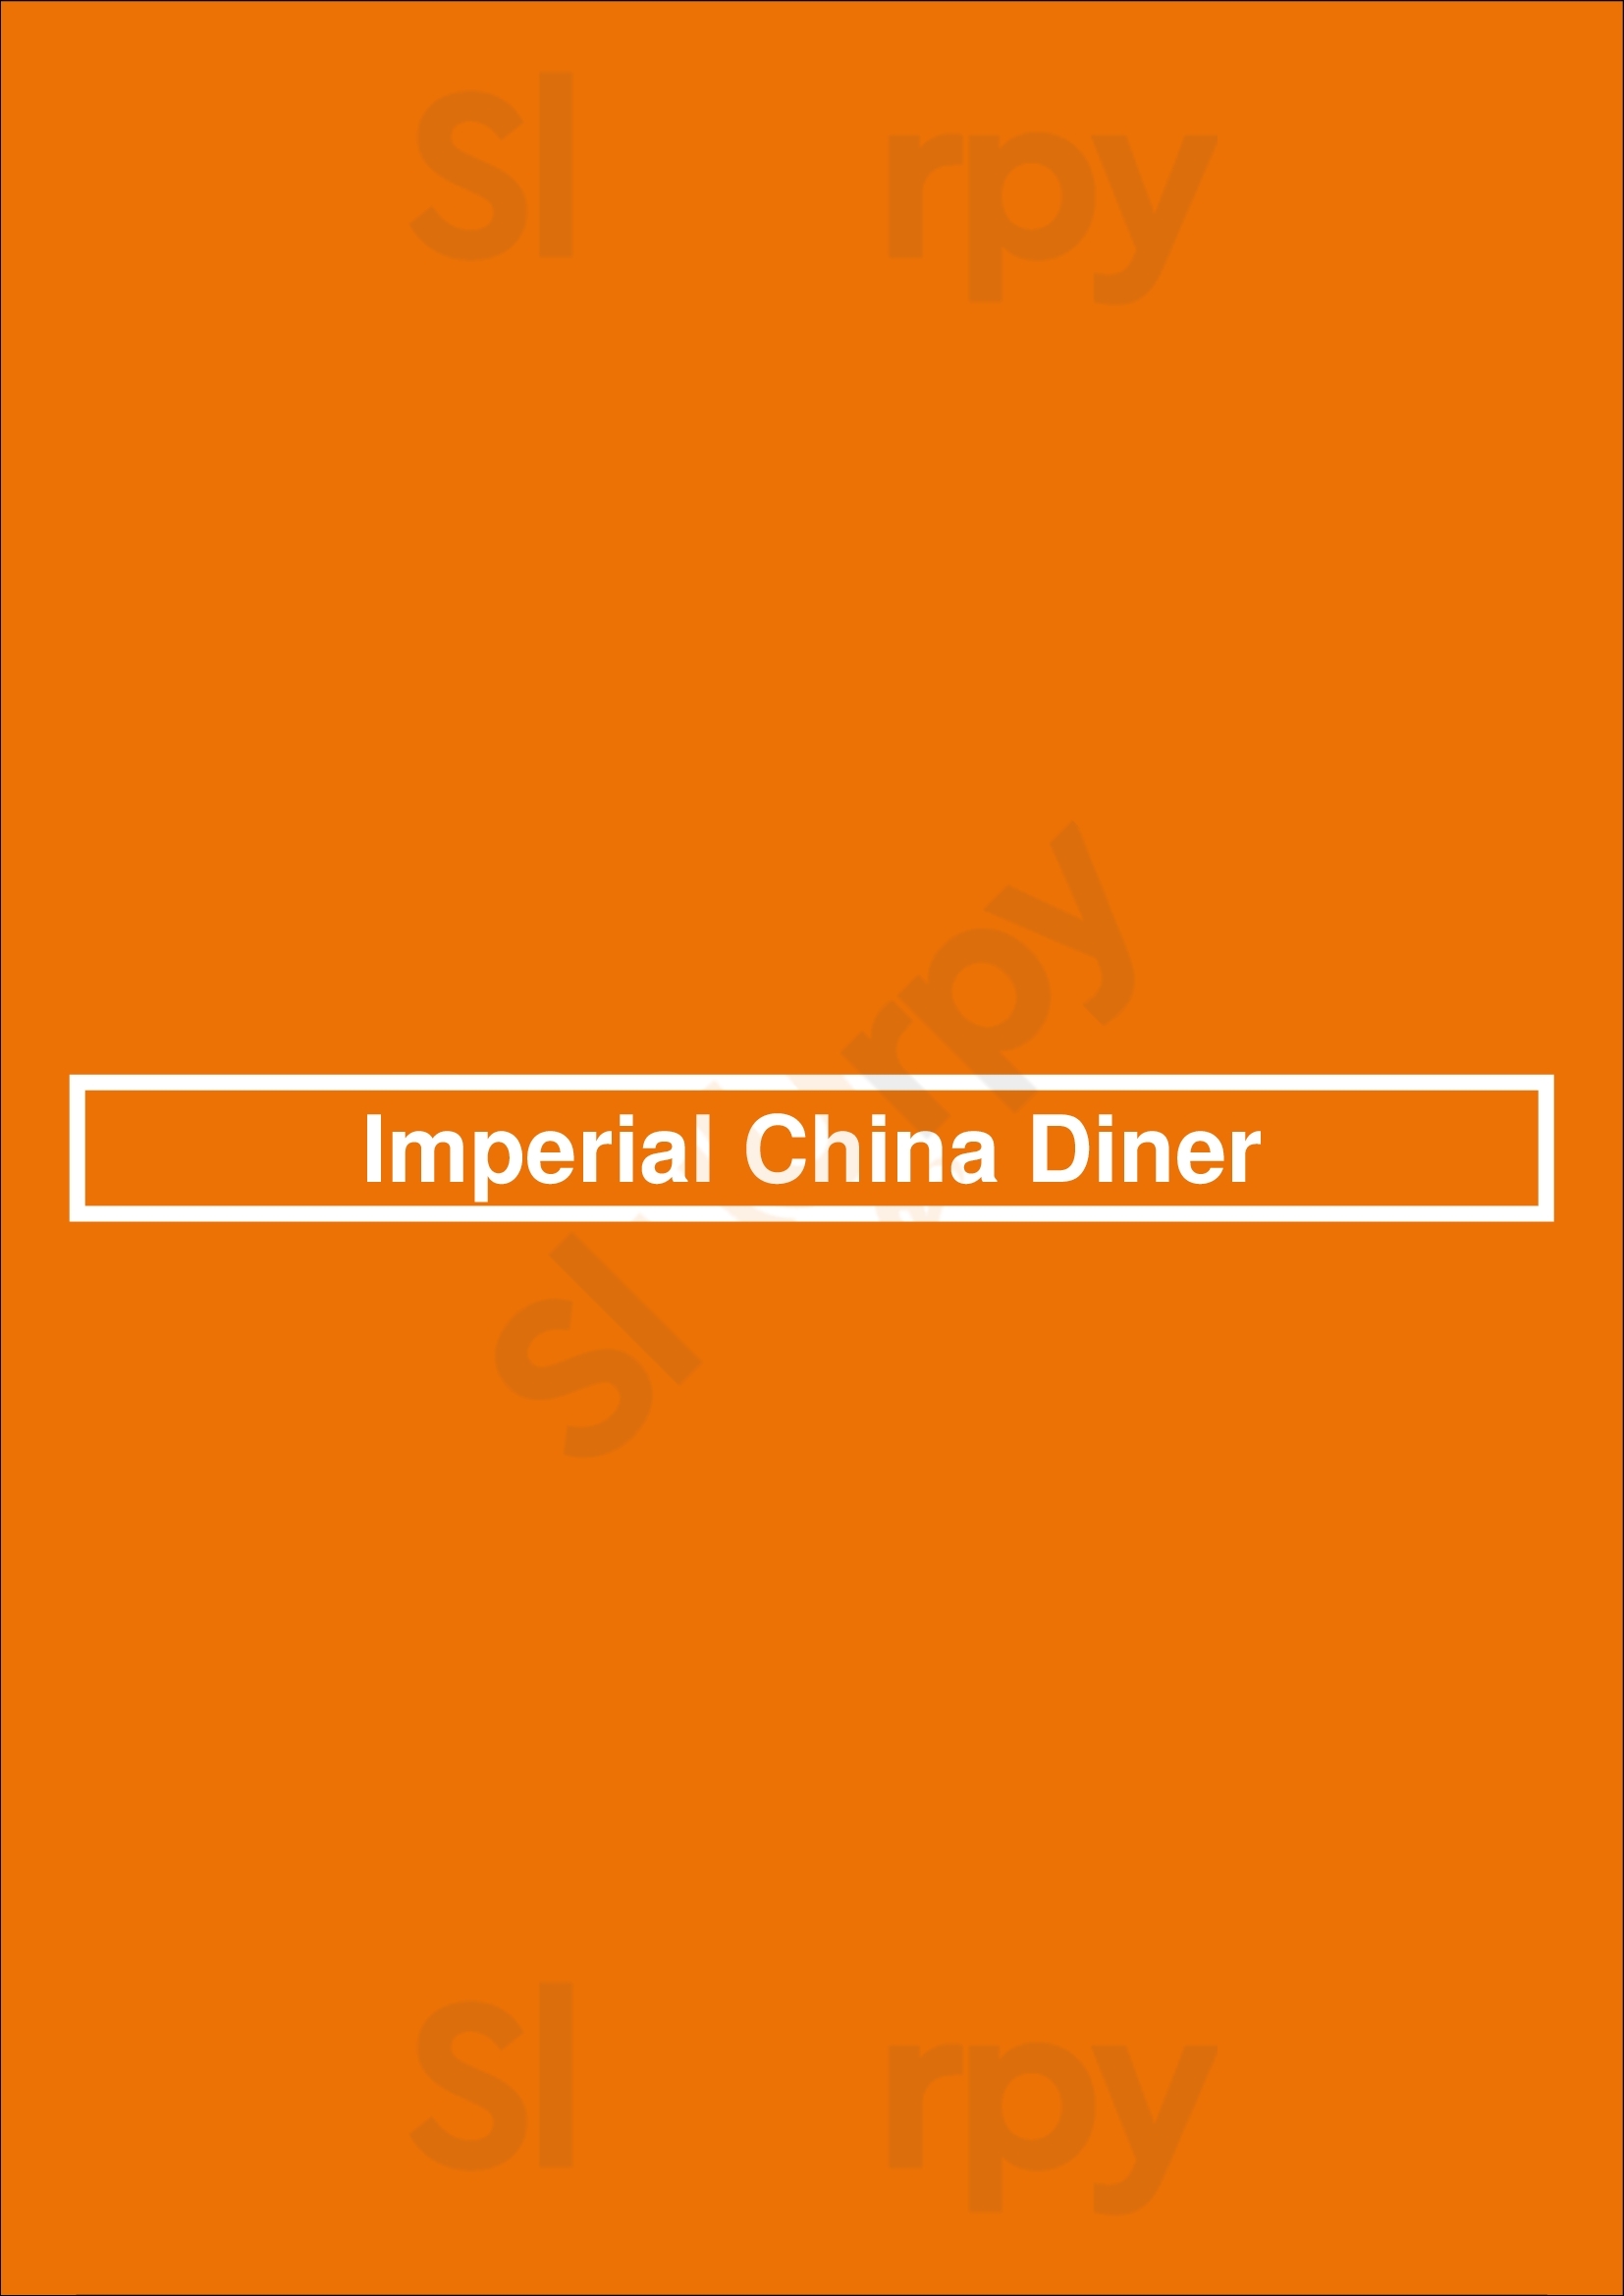 Imperial China Diner Cypress Menu - 1